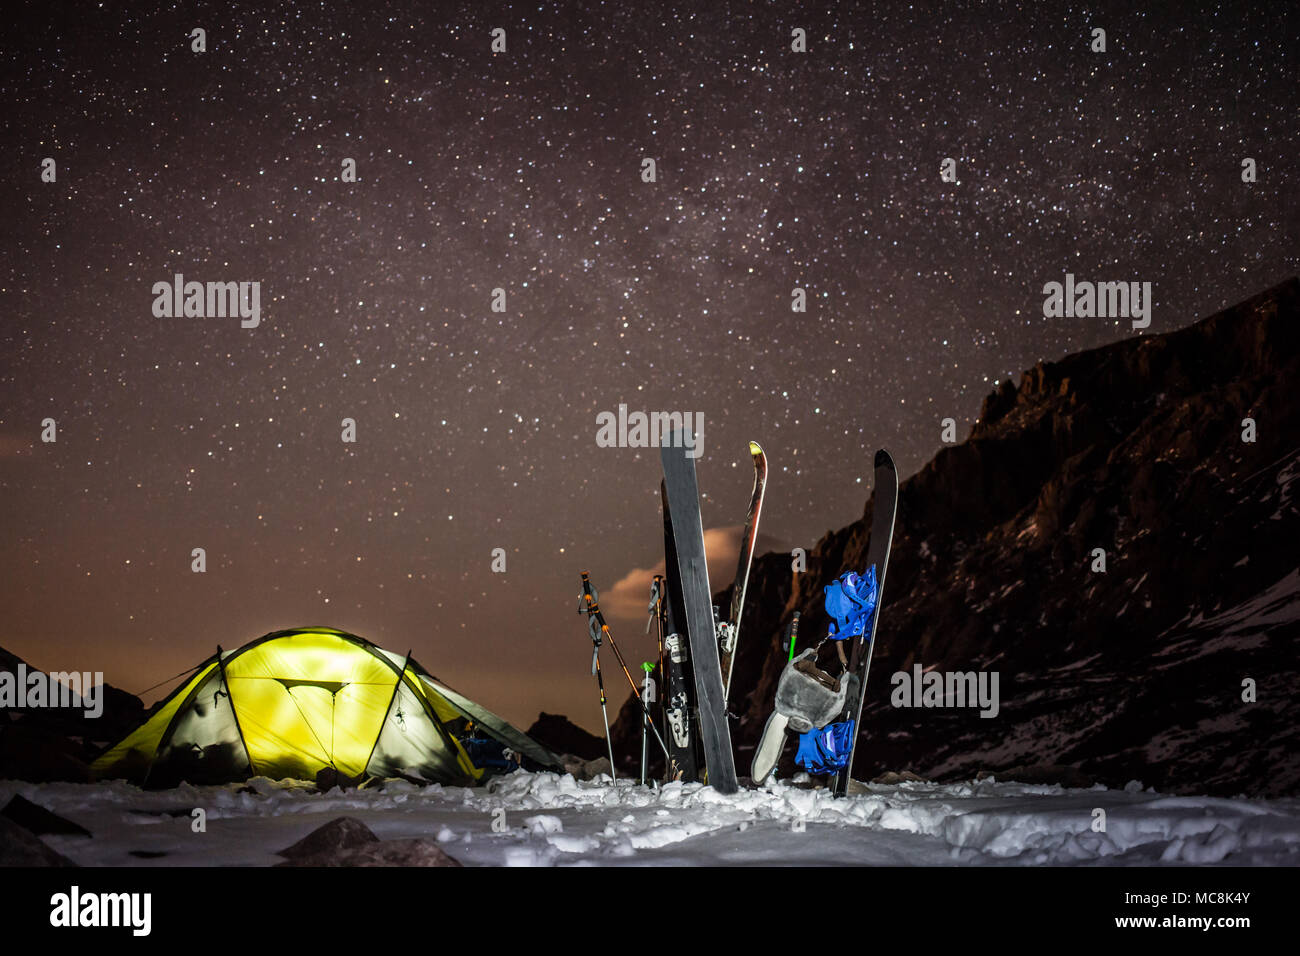 Backcountry camping mit Skiern und snowbords an Bogdanovich Gletscher in den Bergen in der Nähe von Almaty. Klare Himmel voller Sterne und leuchtende Zelt. Stockfoto